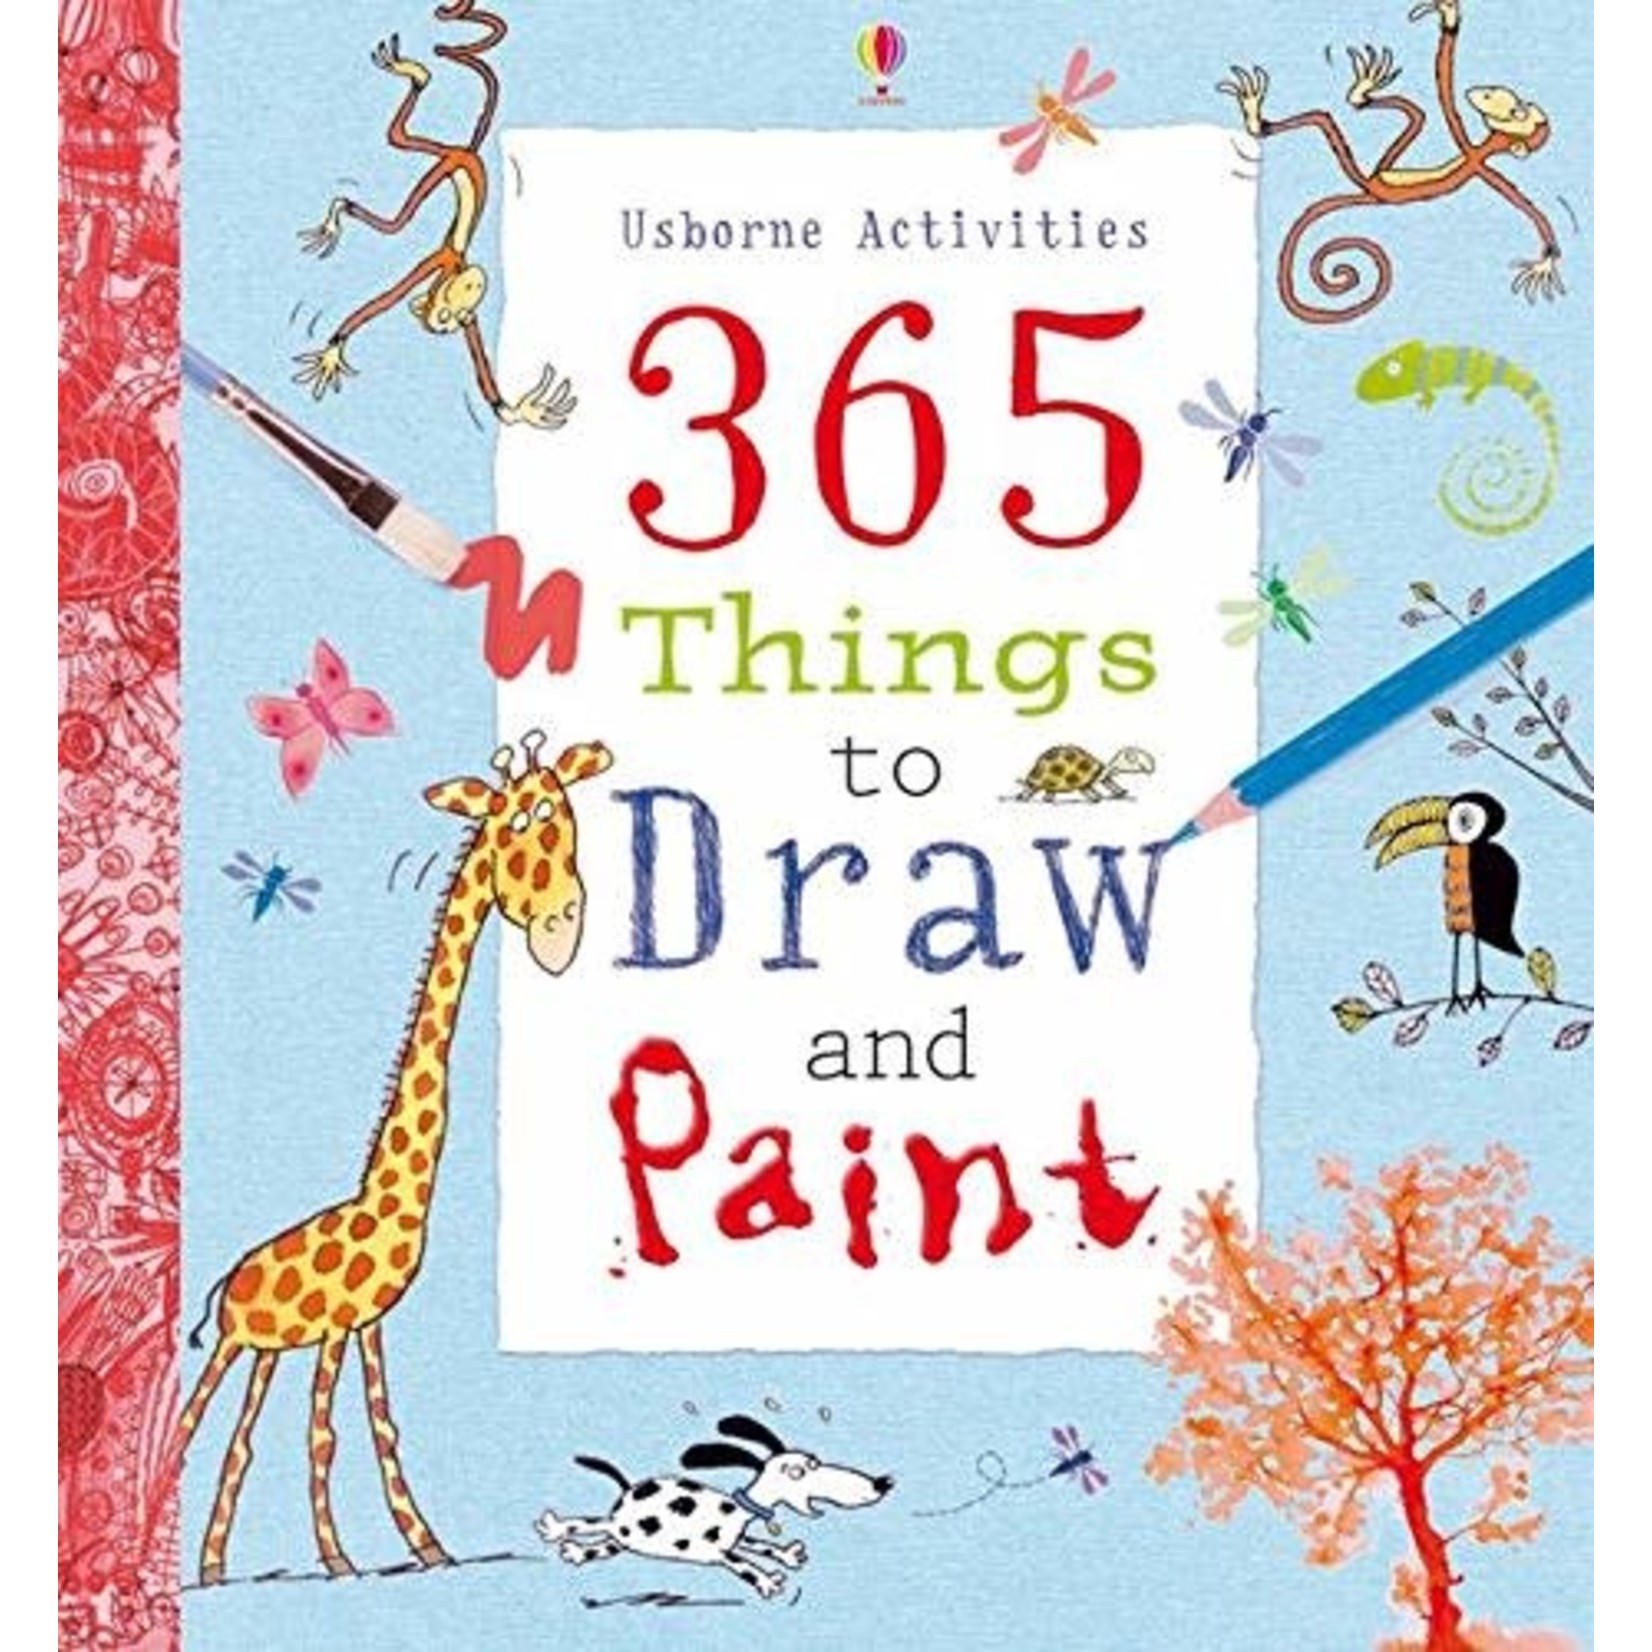 Watt, Fiona Watt, Fiona - Usborne Activities: 365 Things to Draw and Paint